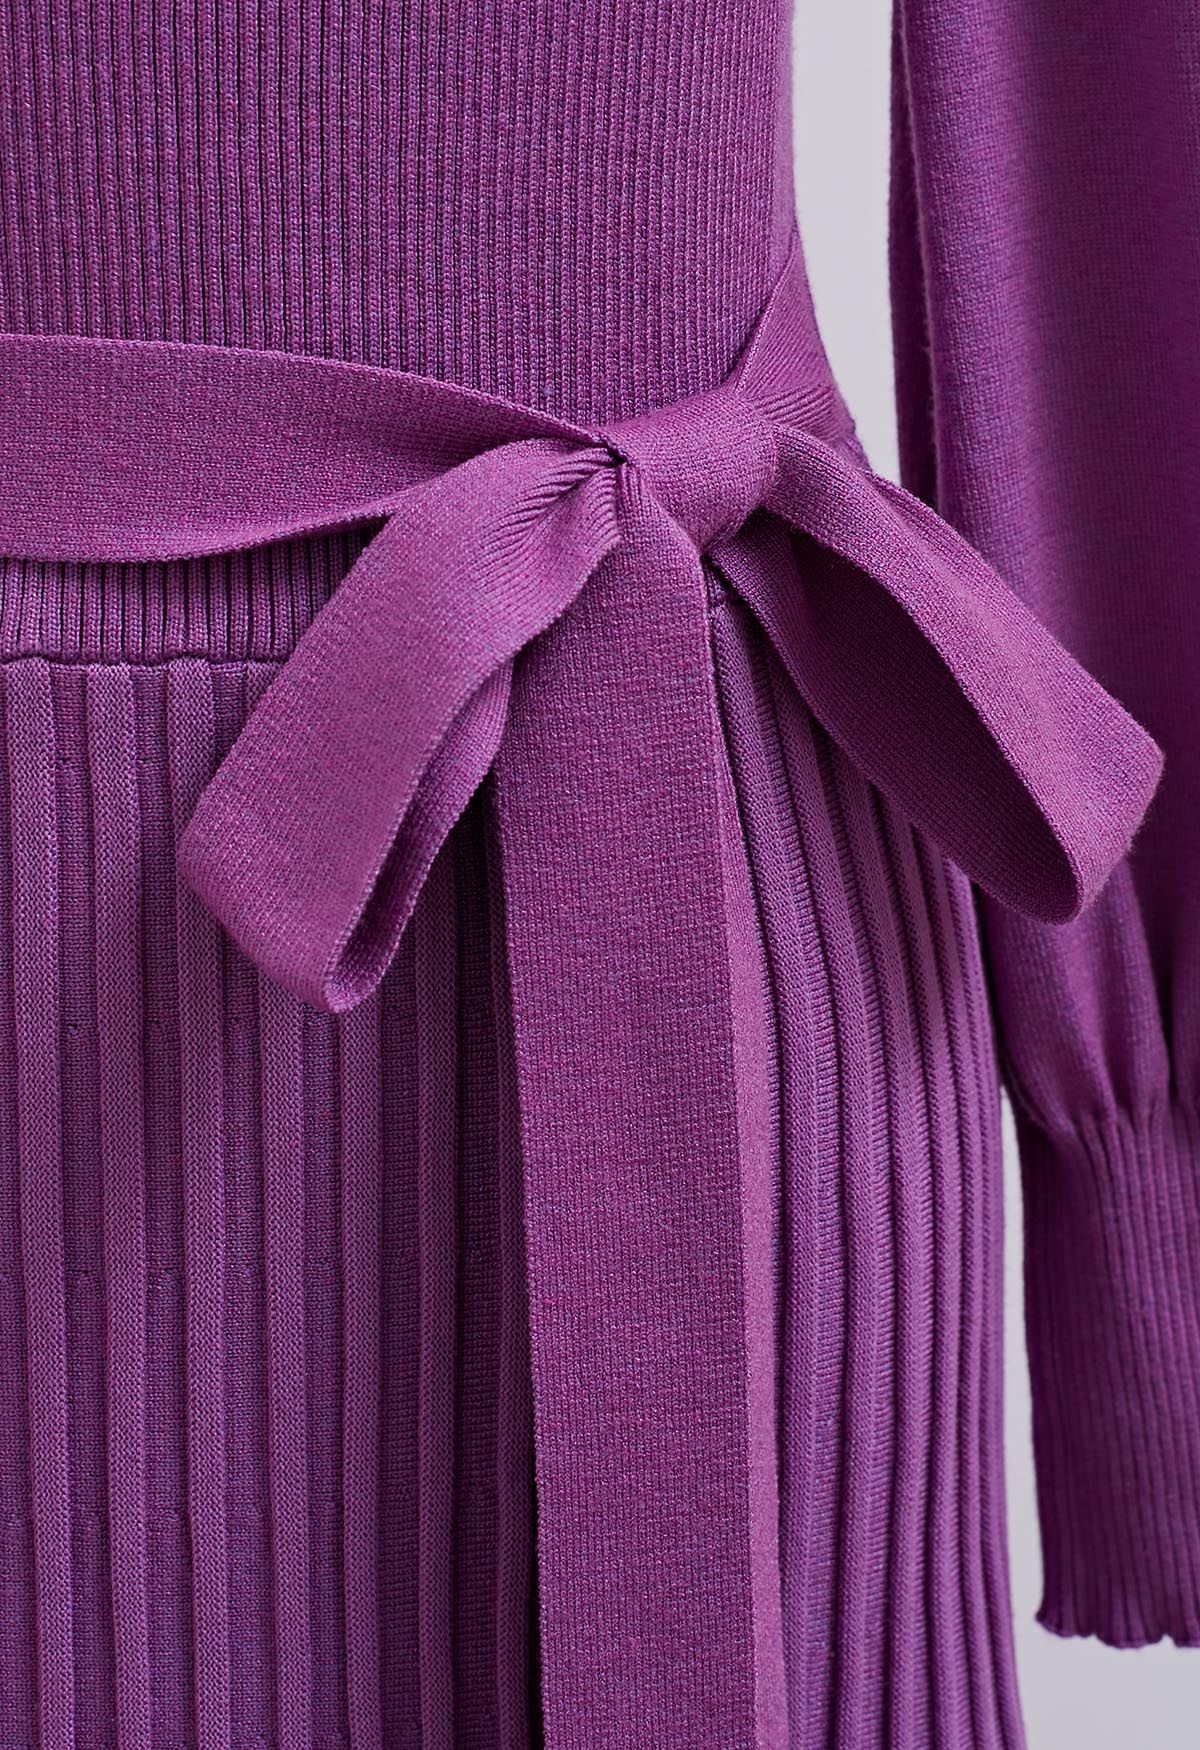 فستان آسر بربطة عنق على شكل حرف V وخصر مطوي باللون الأرجواني